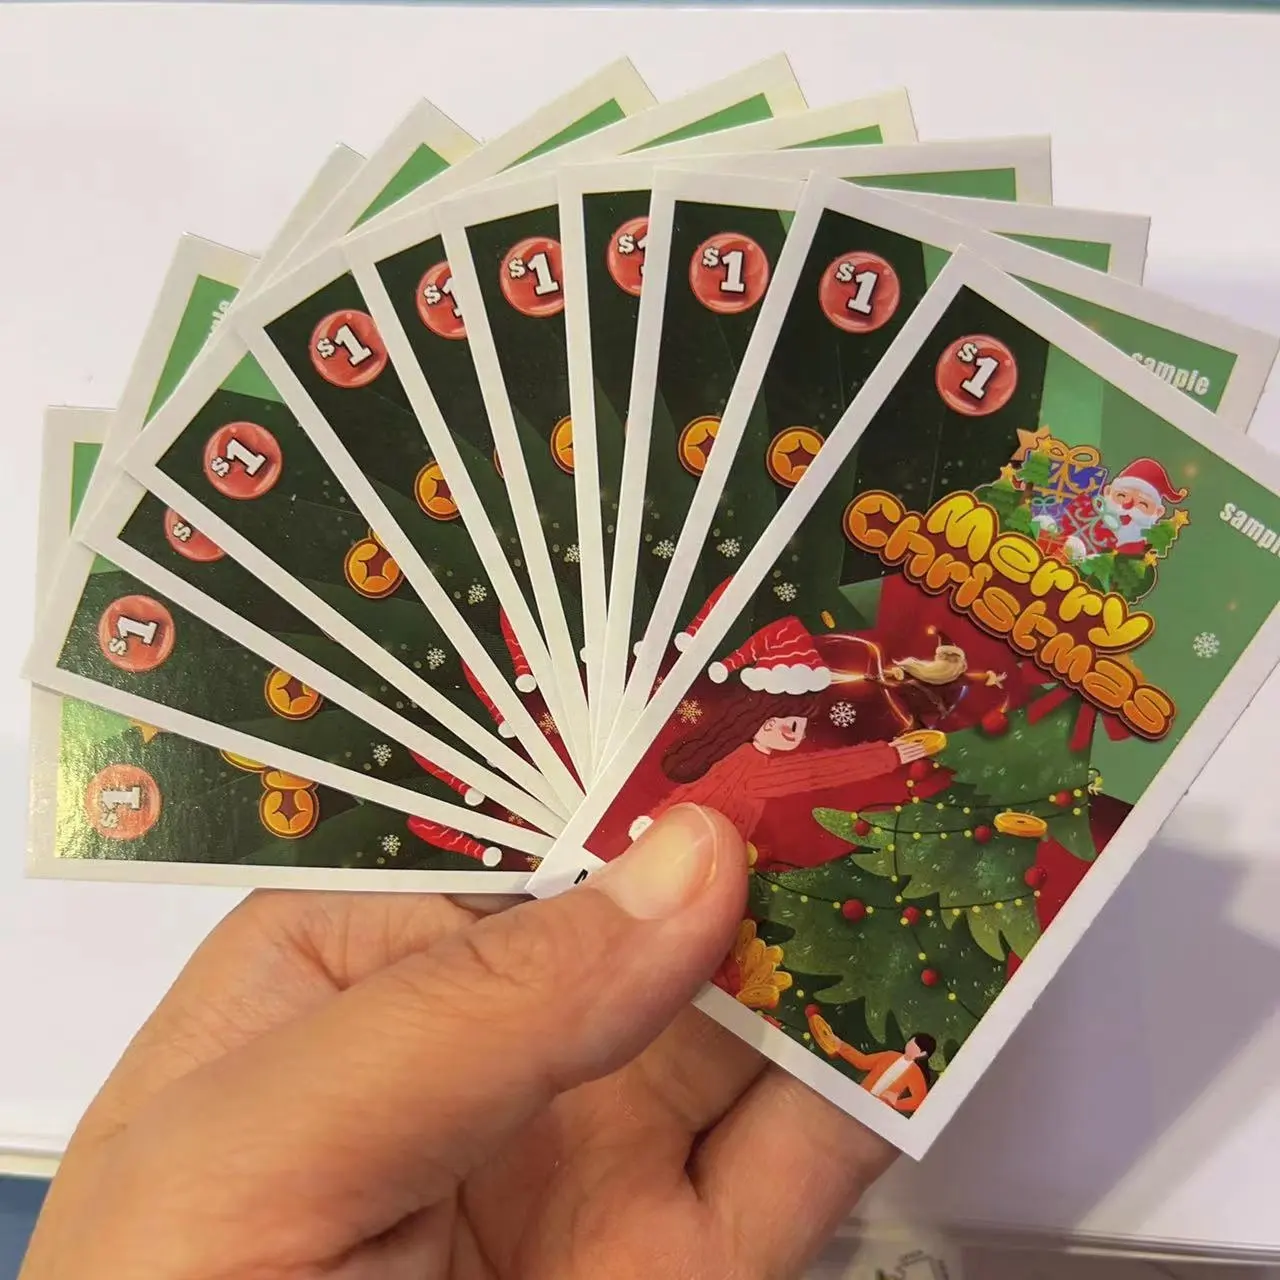 사용자 정의 인쇄 풀 탭 및 브레이크 오픈 도박 복권 티켓 게임 원 탭 크리스마스 테마 티켓 카드